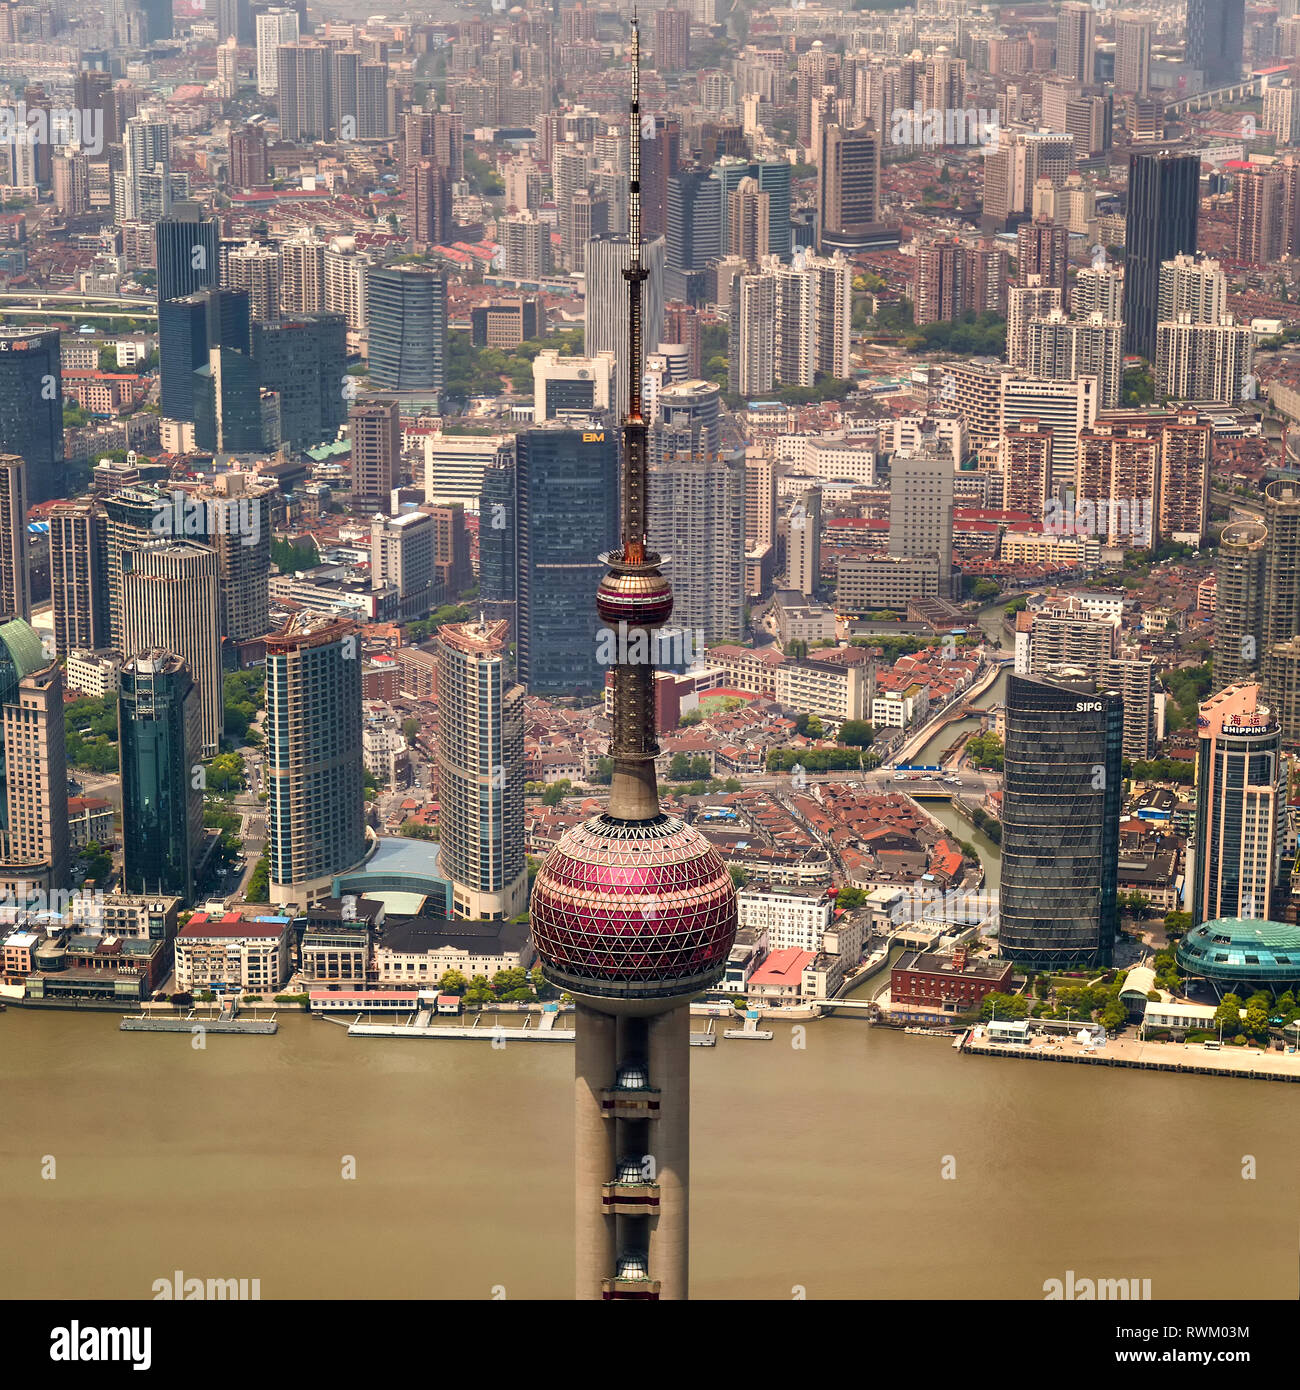 Ein Detail der Antenne spire und oberen Sphären der Oriental Pearl Tower, ein Wahrzeichen Radio & Fernsehturm in Pudong New Area, Shanghai, China. Stockfoto